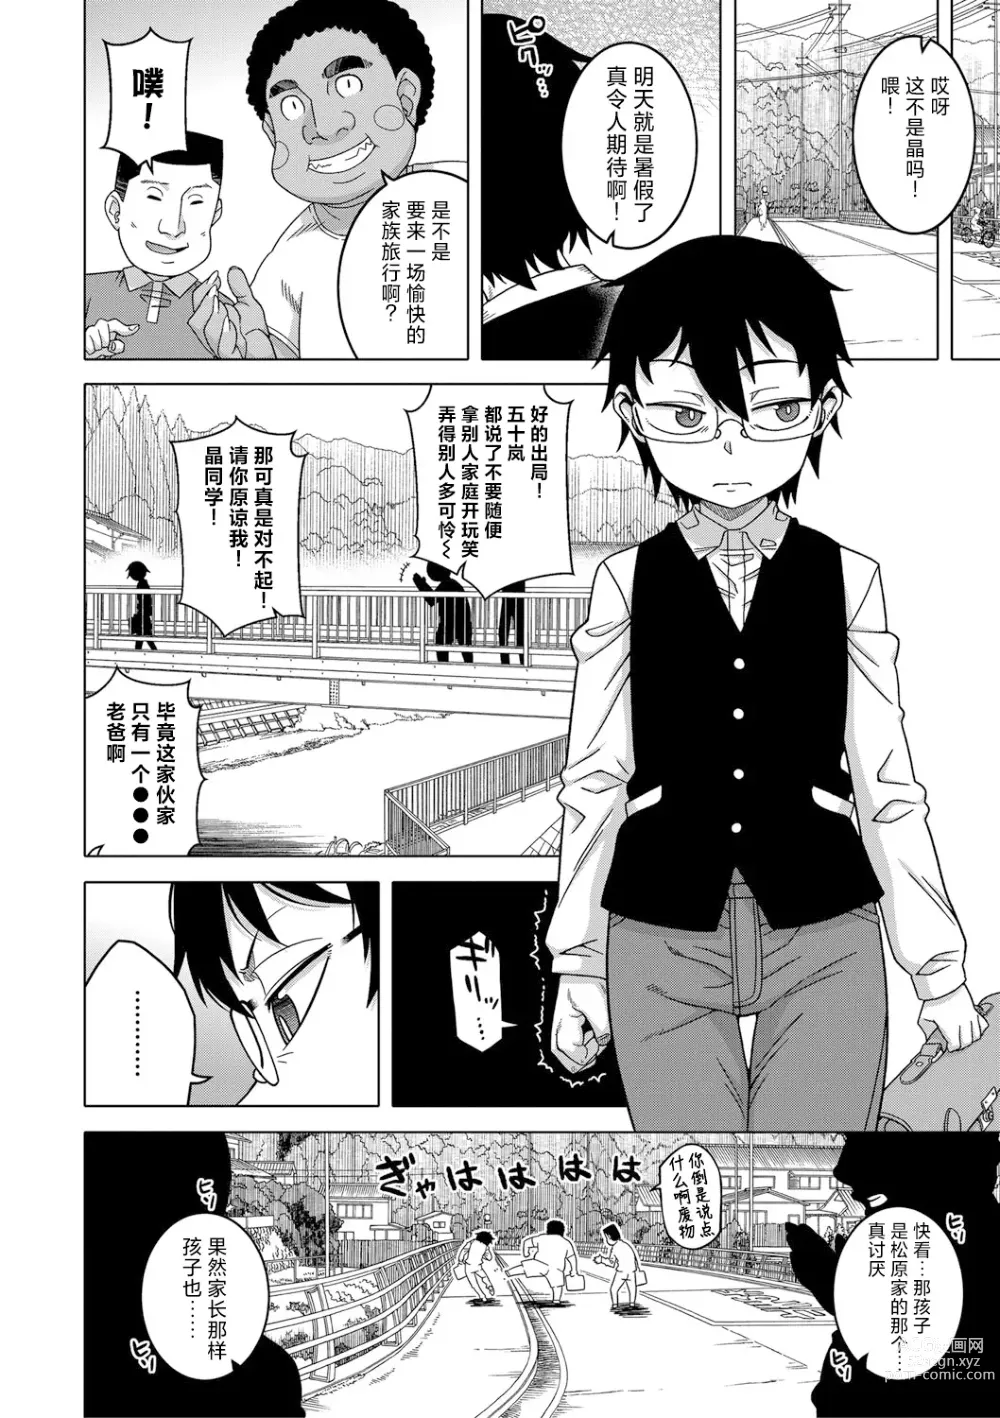 Page 3 of manga Kami-sama no Tsukurikata Ch. 1-5